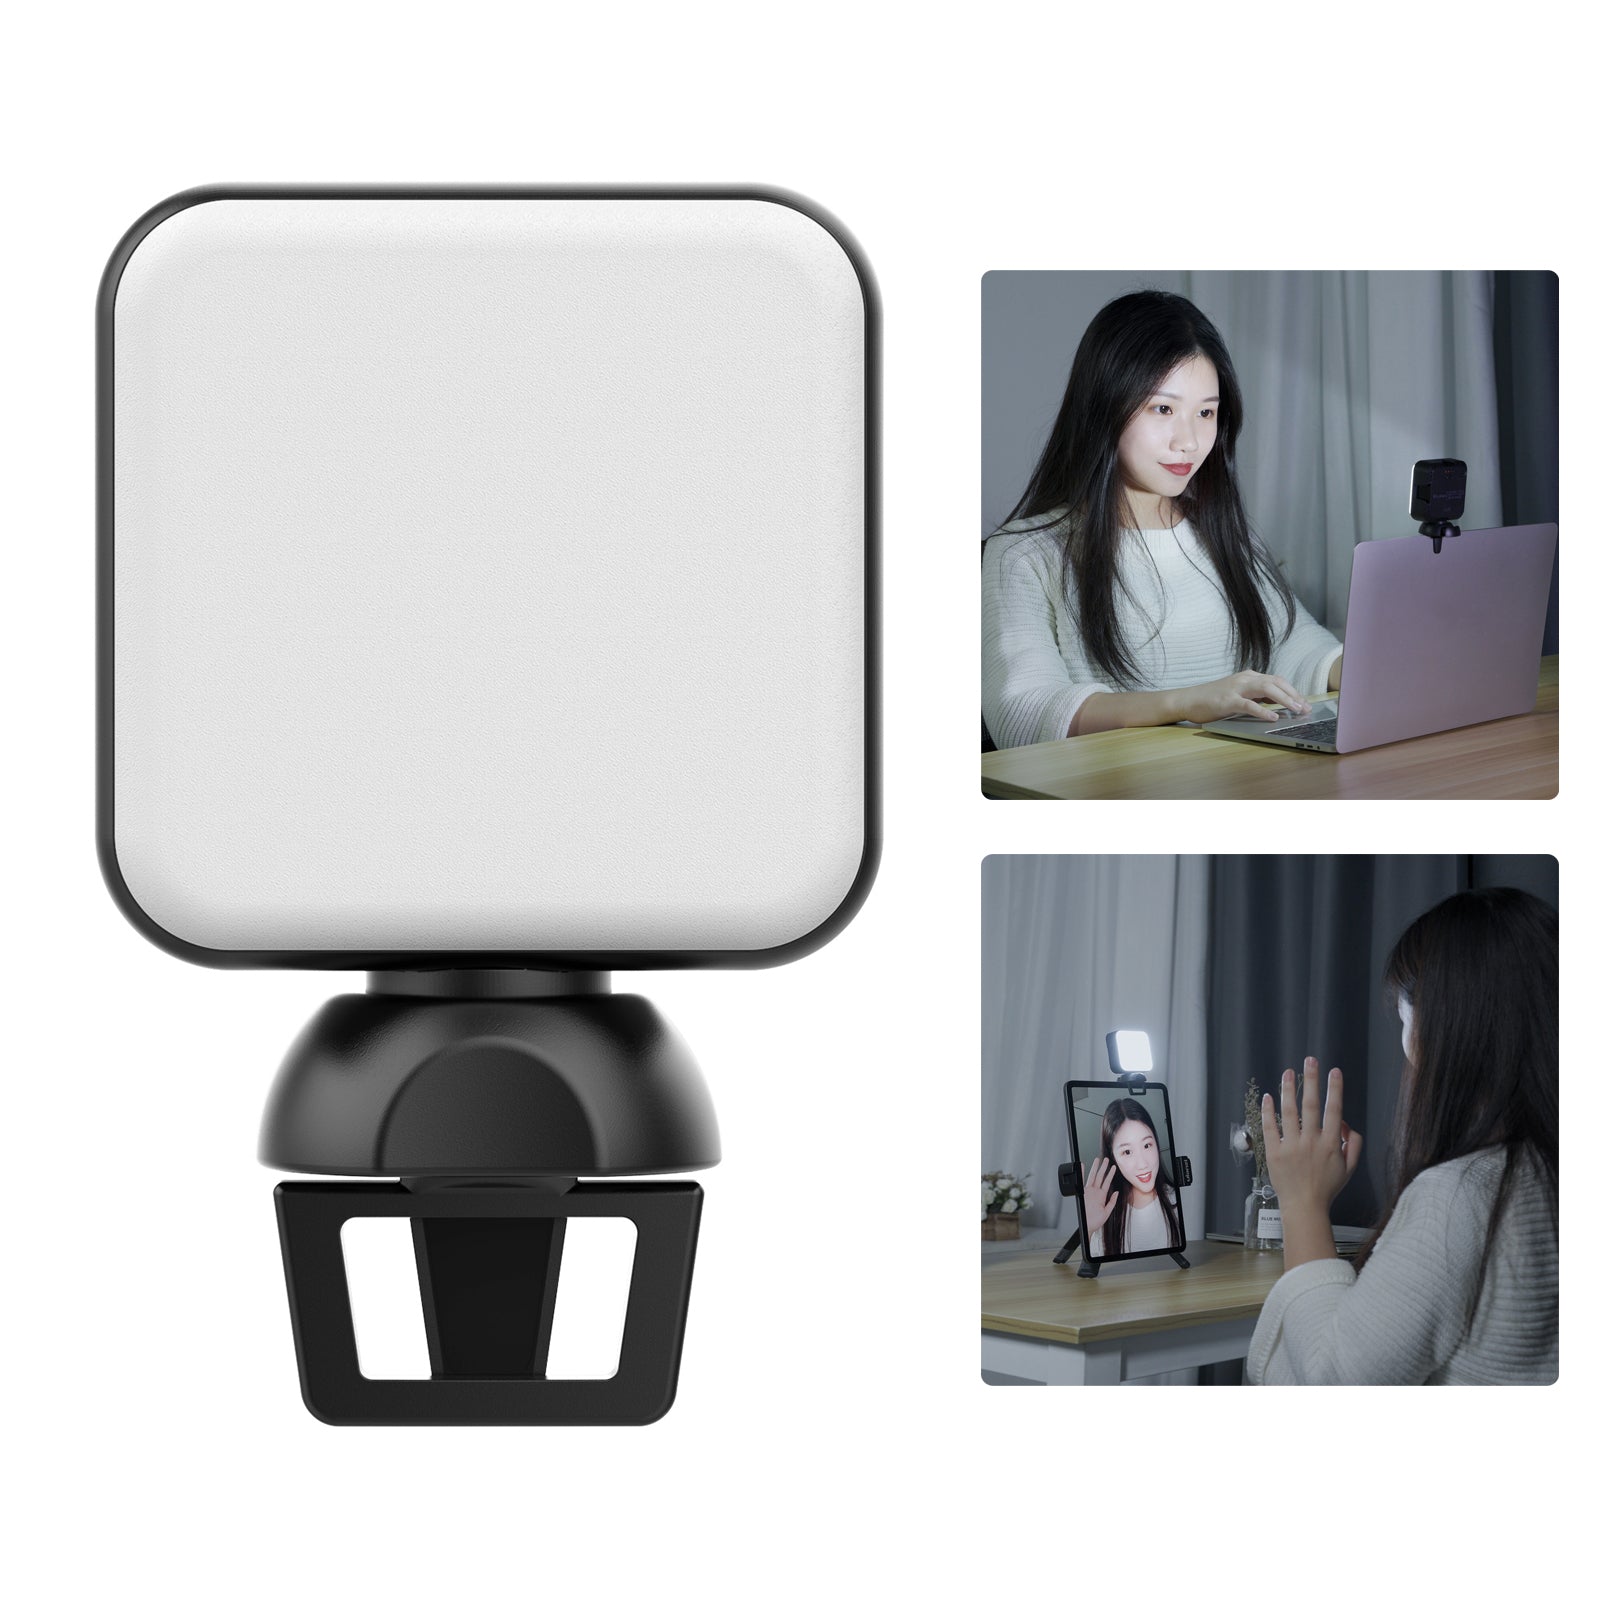 VIJIM CL04 Laptop Selfie LED Video Light Conference Light for Macbook Tablet